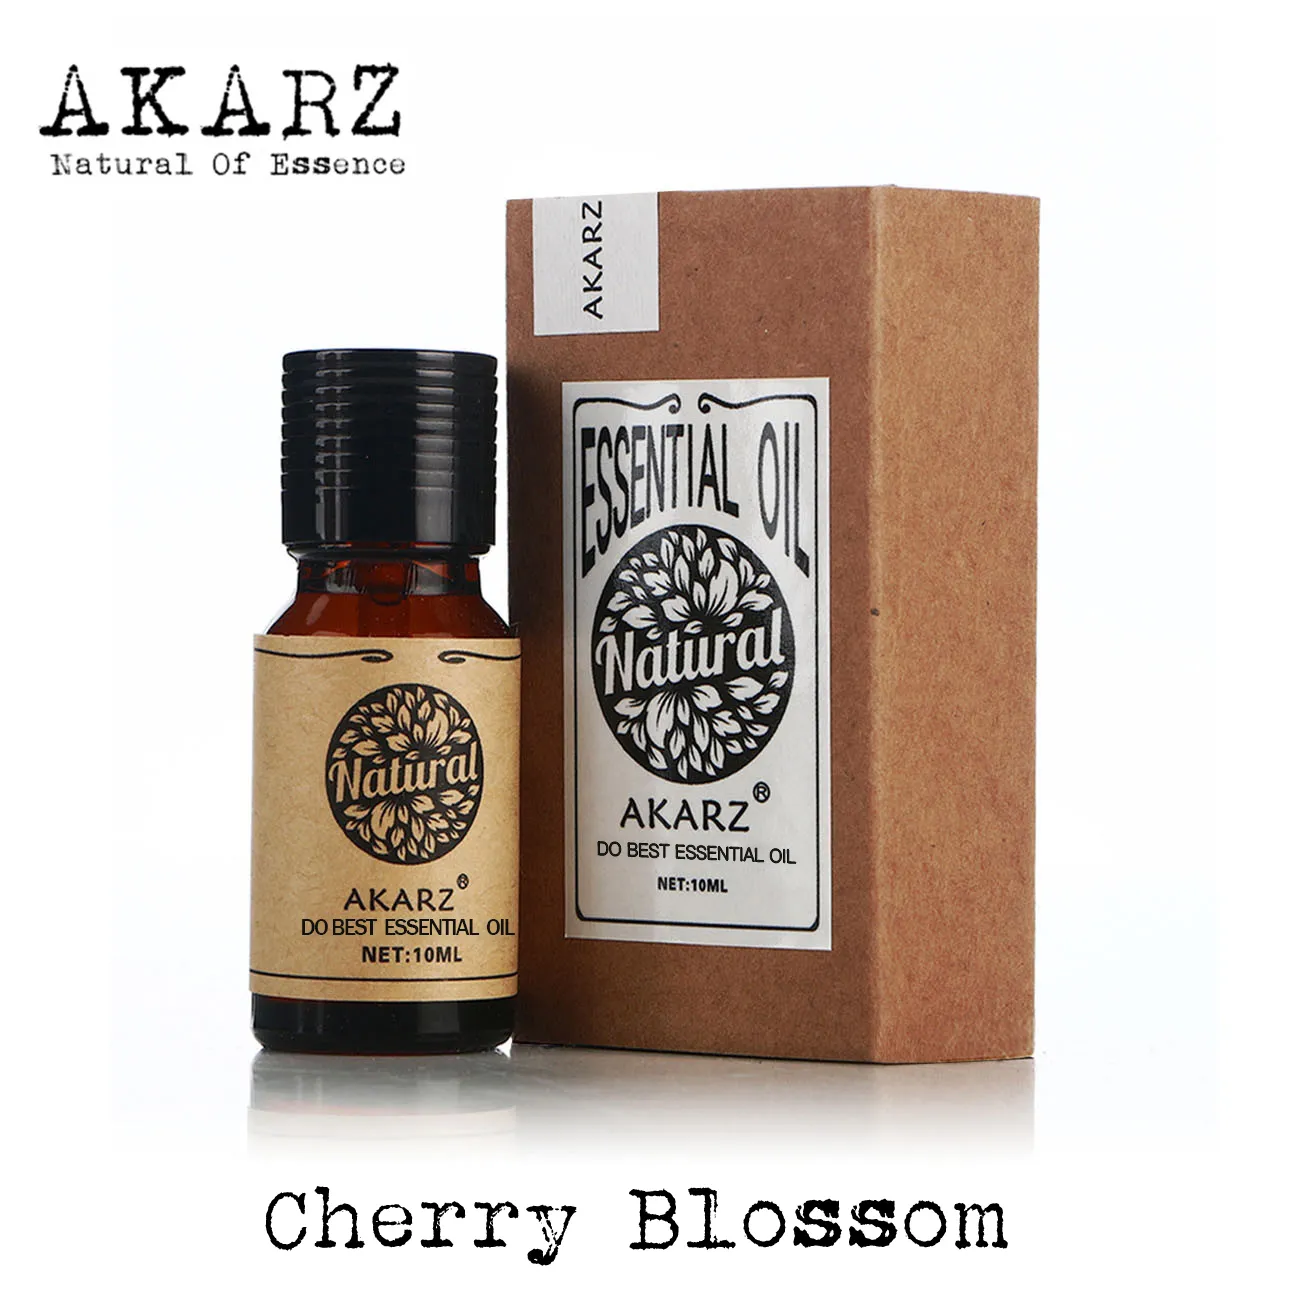 Huile de fleur de cerisier AKARZ célèbre marque aromathérapie naturelle visage corps soins de la peau huile essentielle de fleur de cerisier